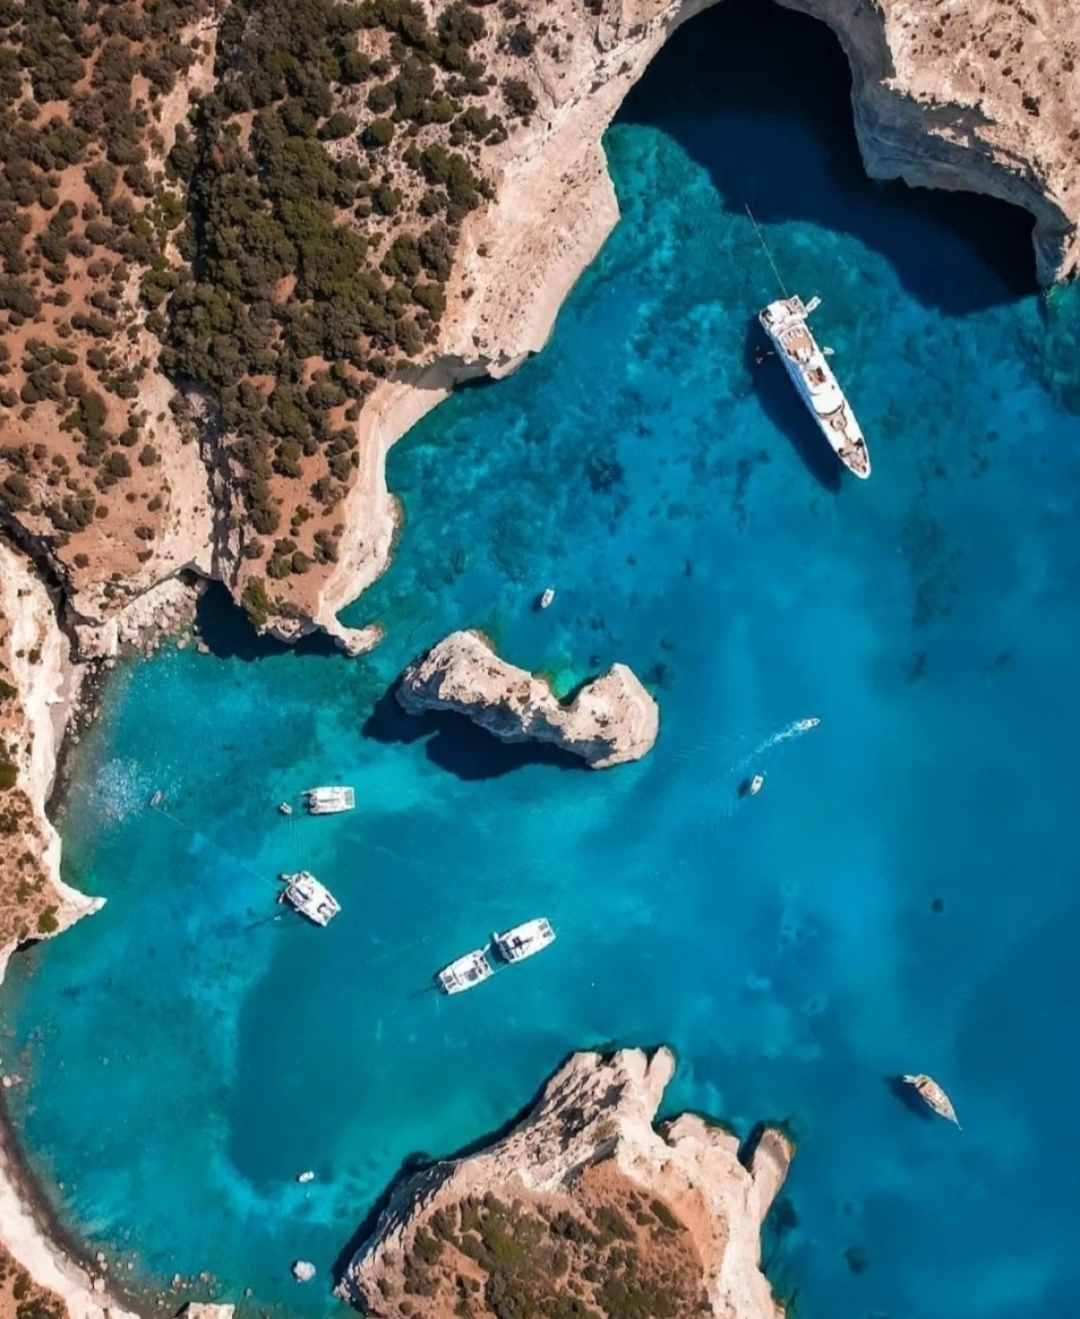 希腊，一个古老而美丽的欧洲国家！ 那是完全不同次元的透明度与蔚蓝，海水简直有如真空的空间般澄澈剔透，